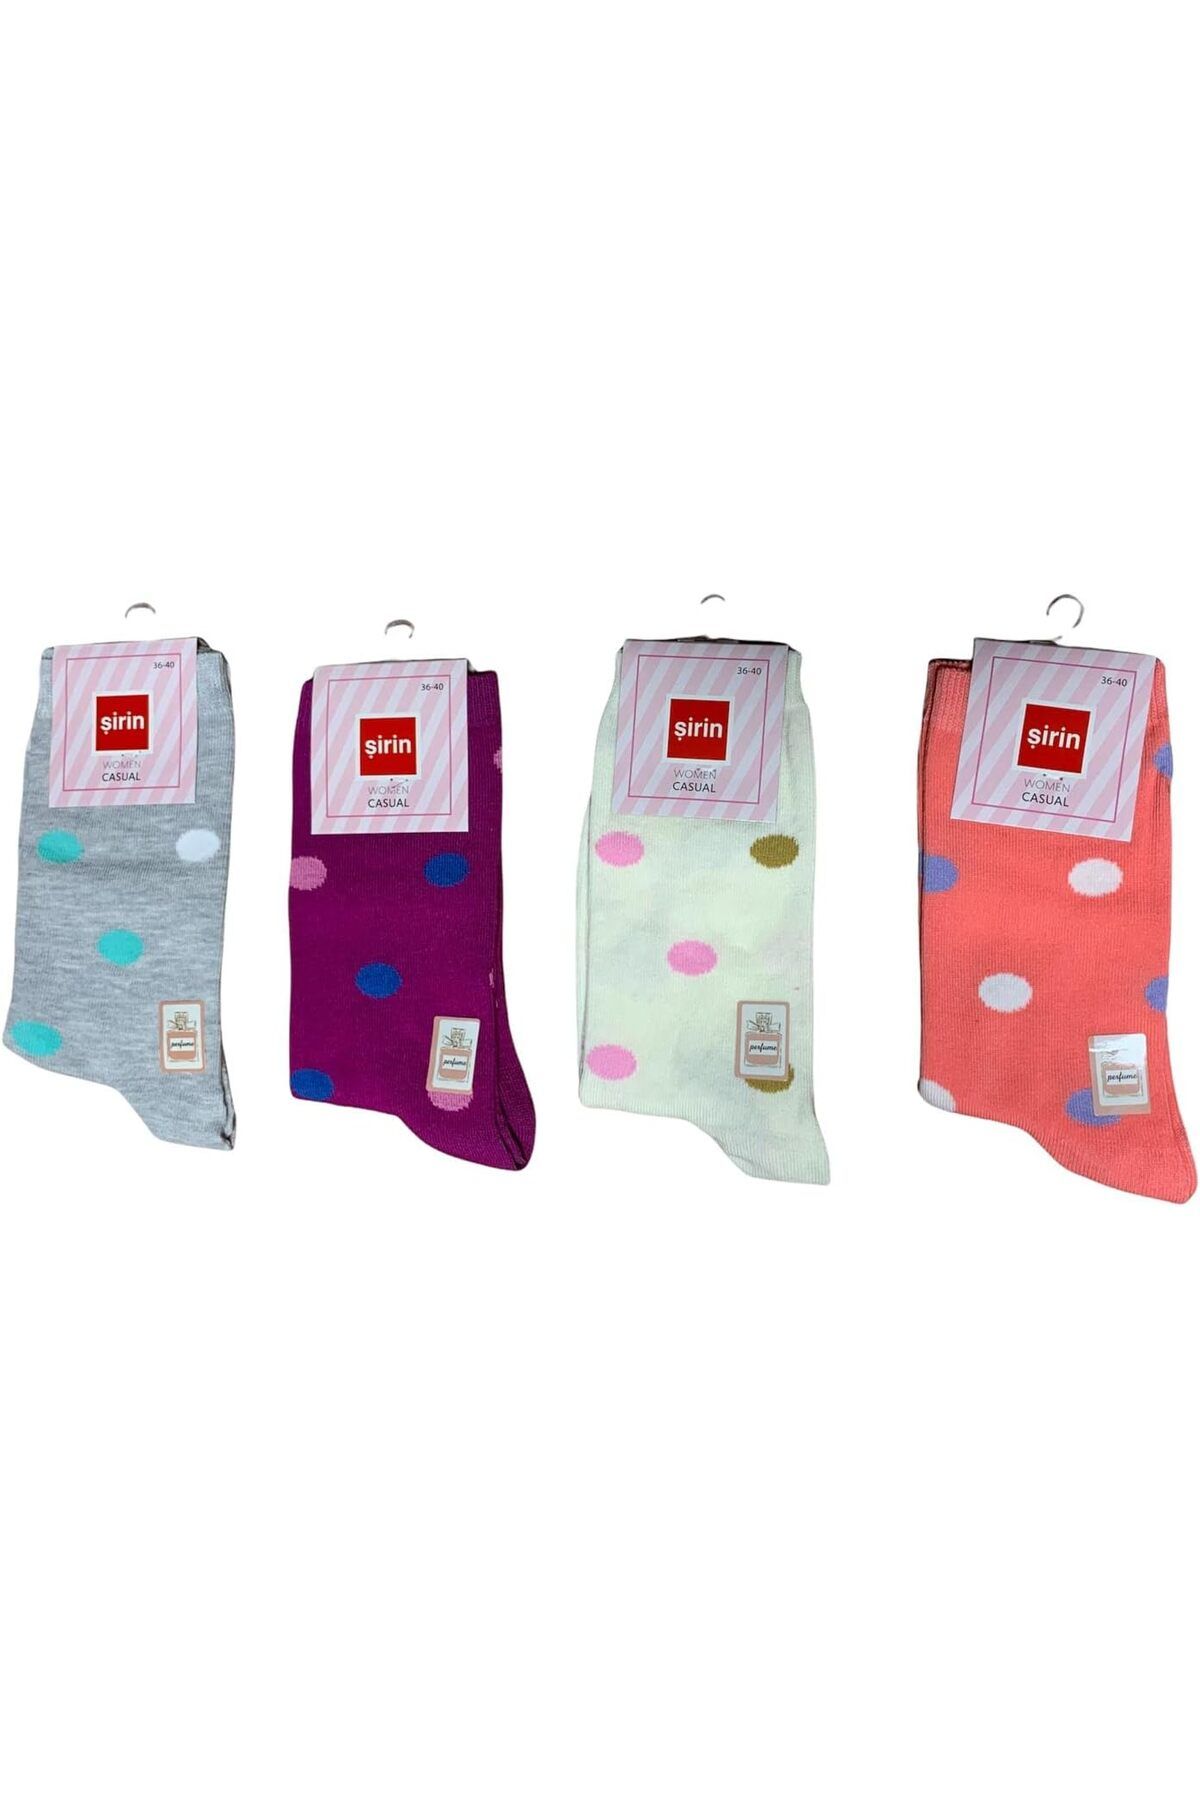 Savings Sphere Şirin 4'lü Kadın Parfümlü Soket Çorap